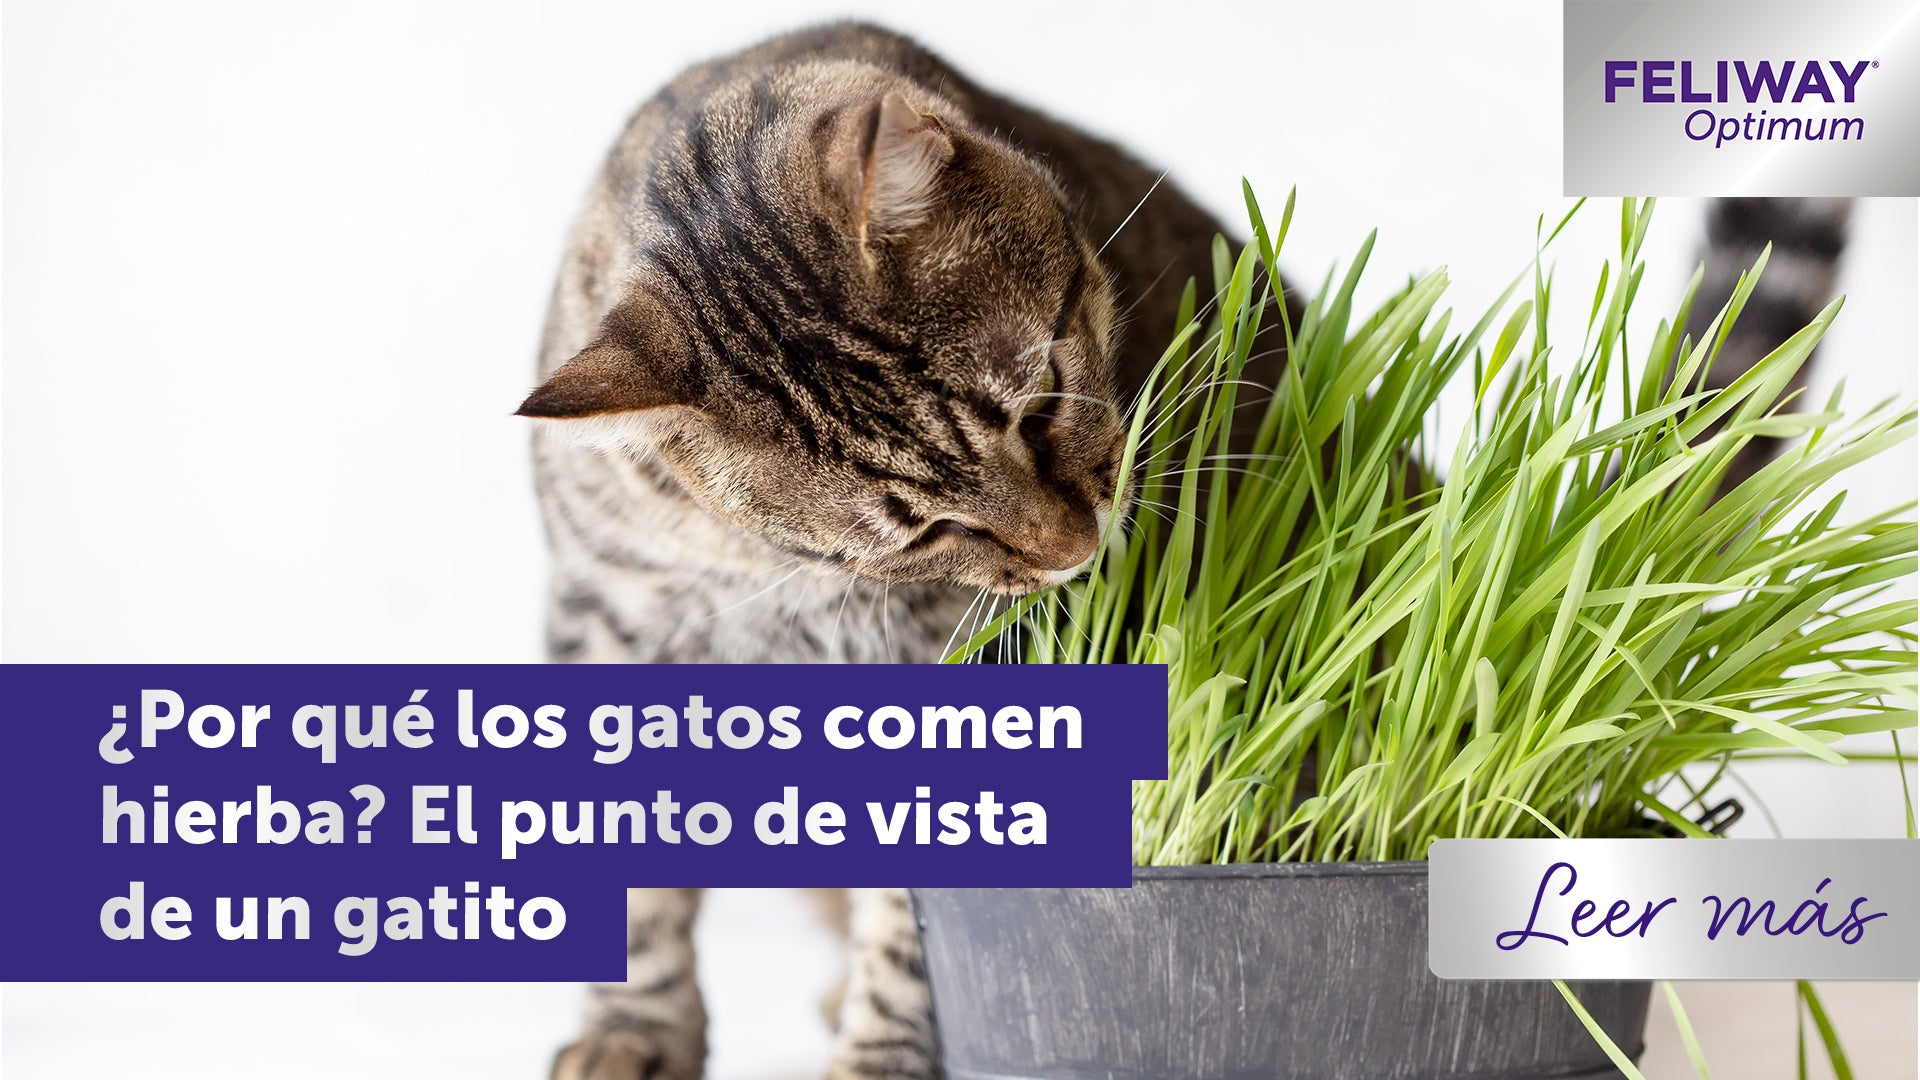 ¿Por qué los gatos comen hierba? El punto de vista de un gatito